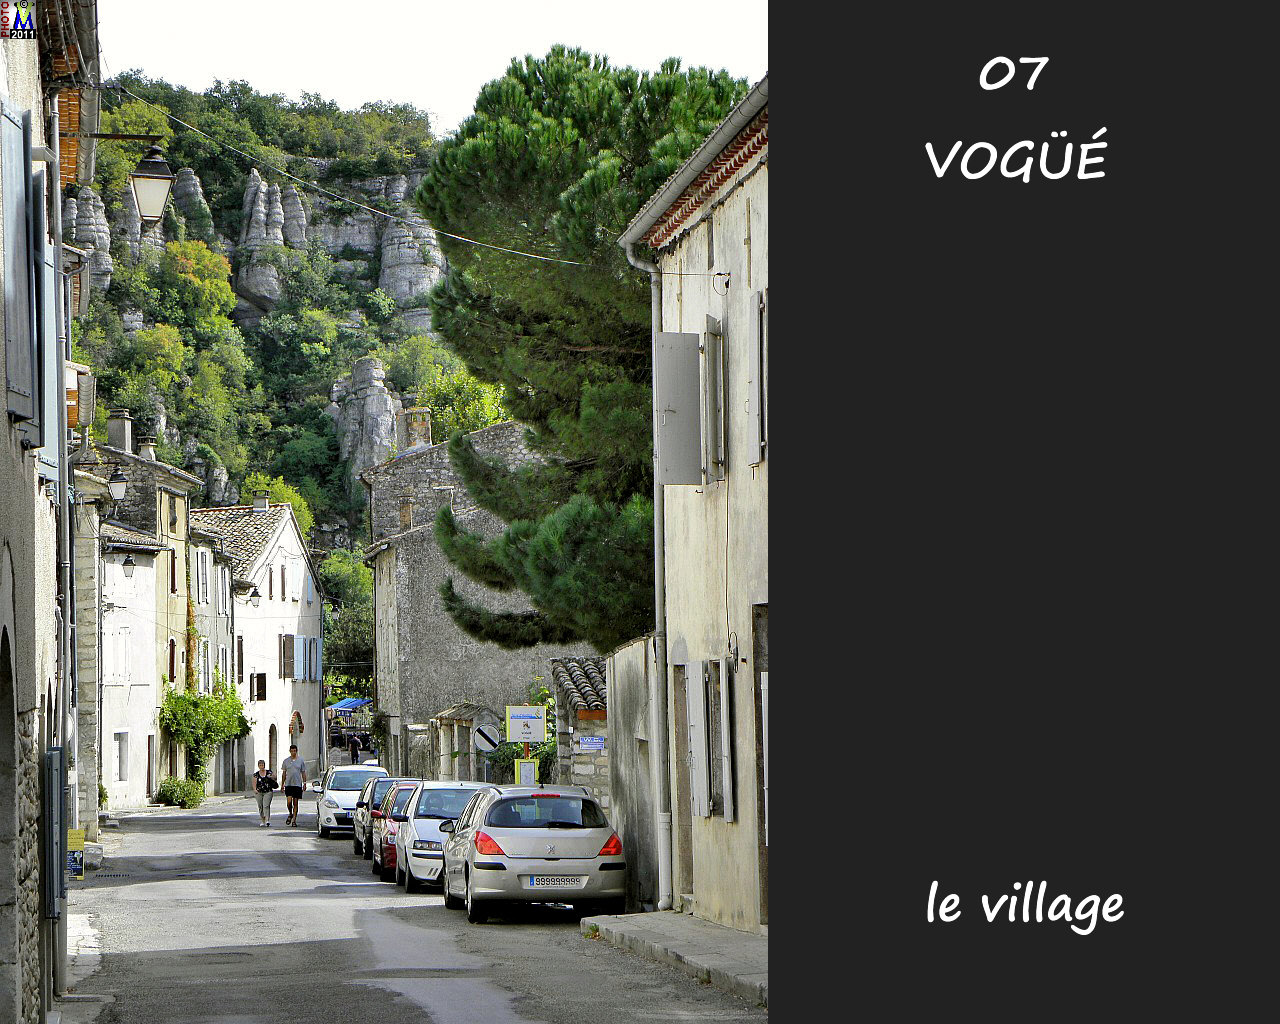 07VOGUE_village_112.jpg